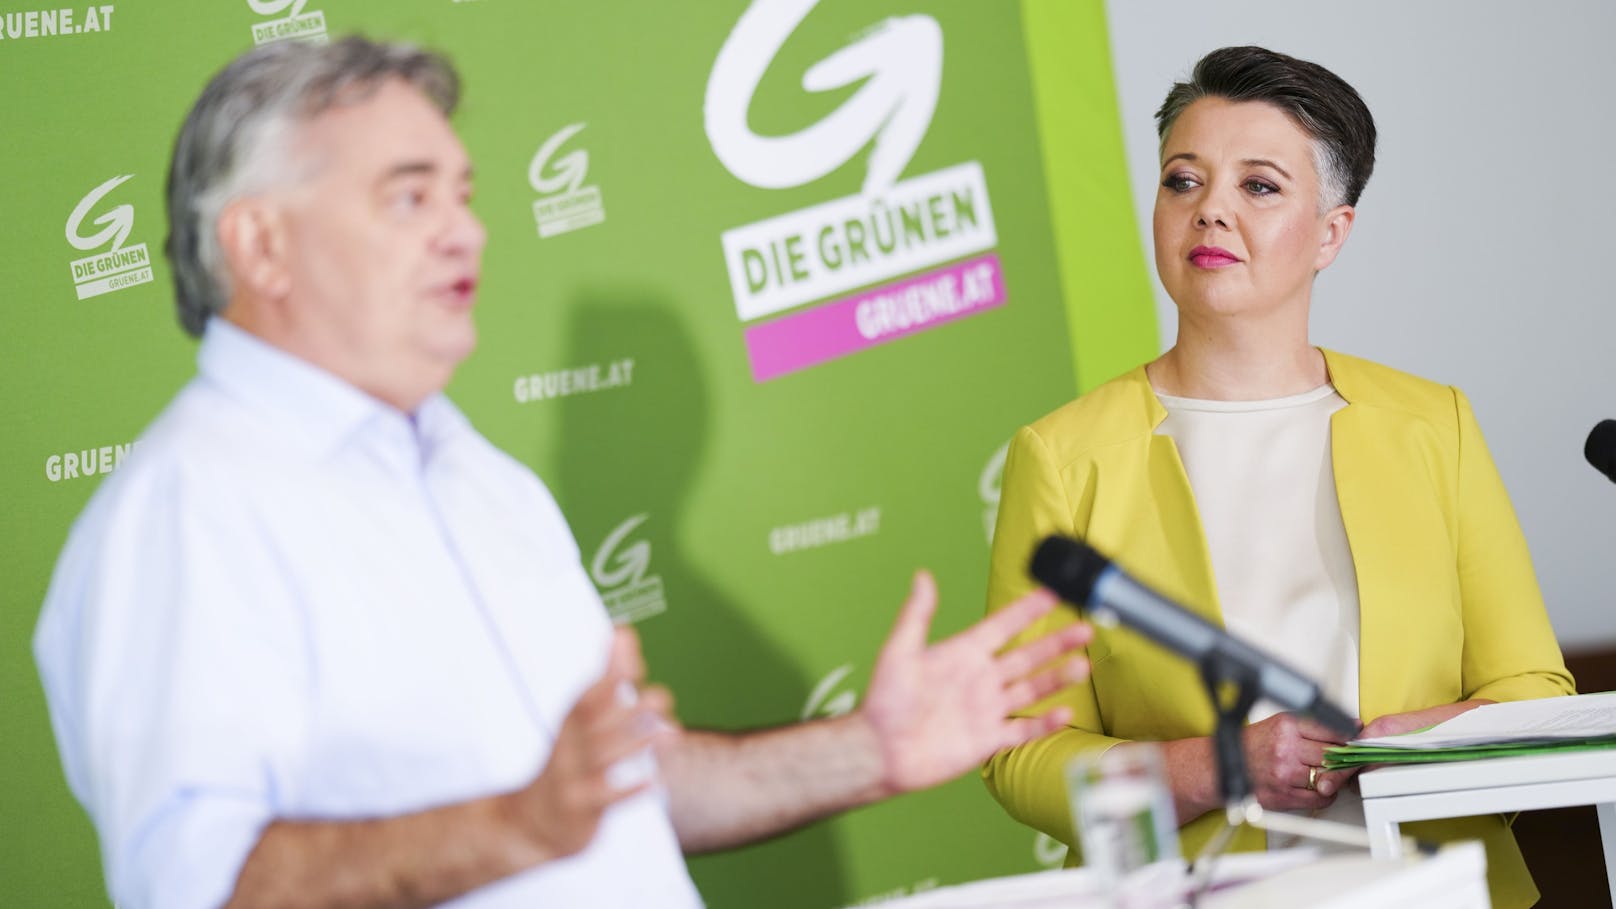 "Nicht nachvollziehbar": Grüne attackieren jetzt ÖVP